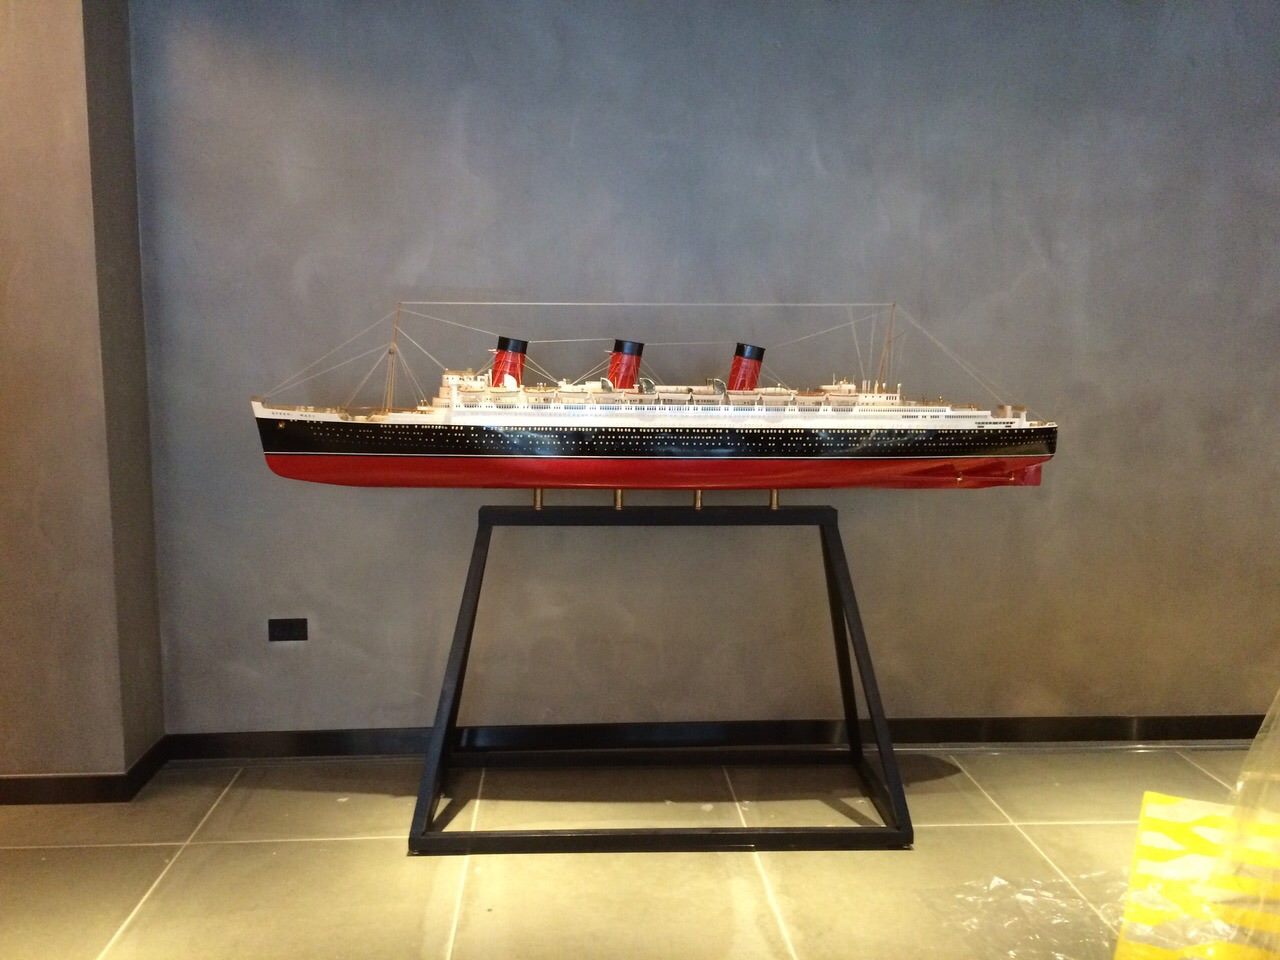 Premier Ship Models